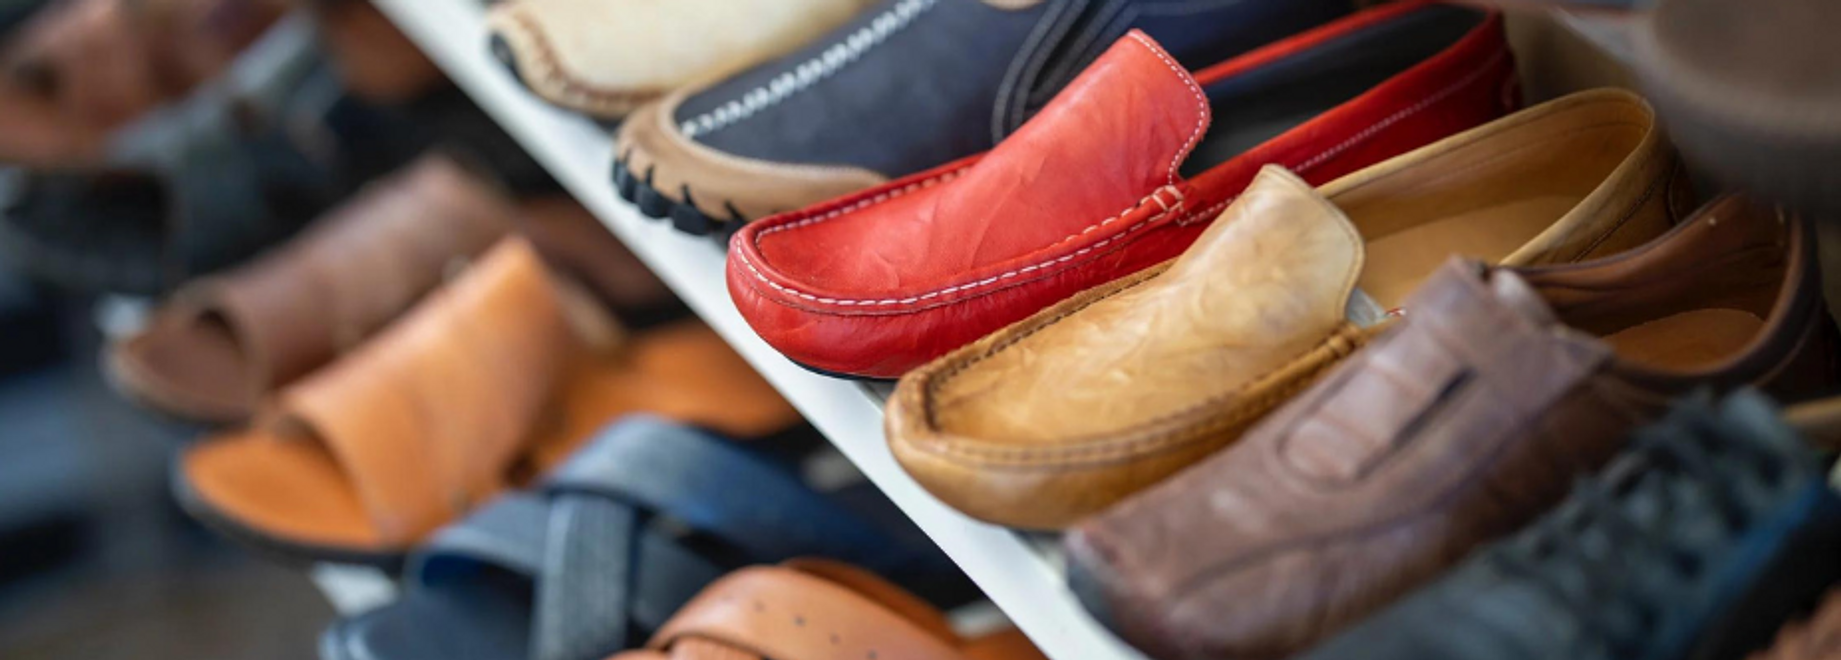 Mendal Shoes, La Vache Noire, Arcueil, chaussures, sandales, baskets, talons, boutique, shopping